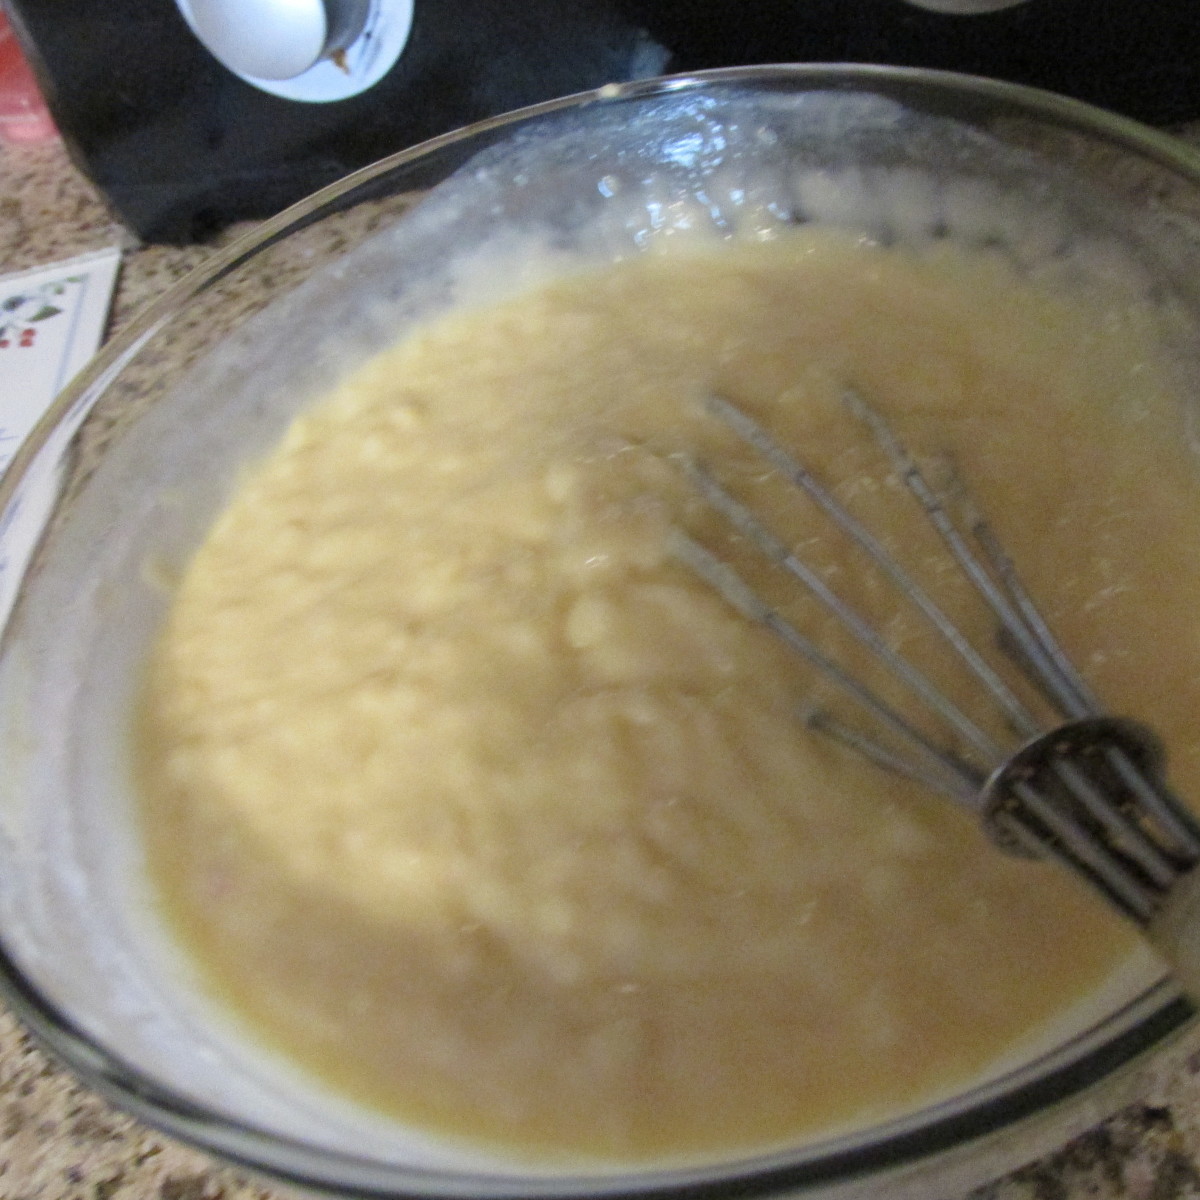 Soup mixture